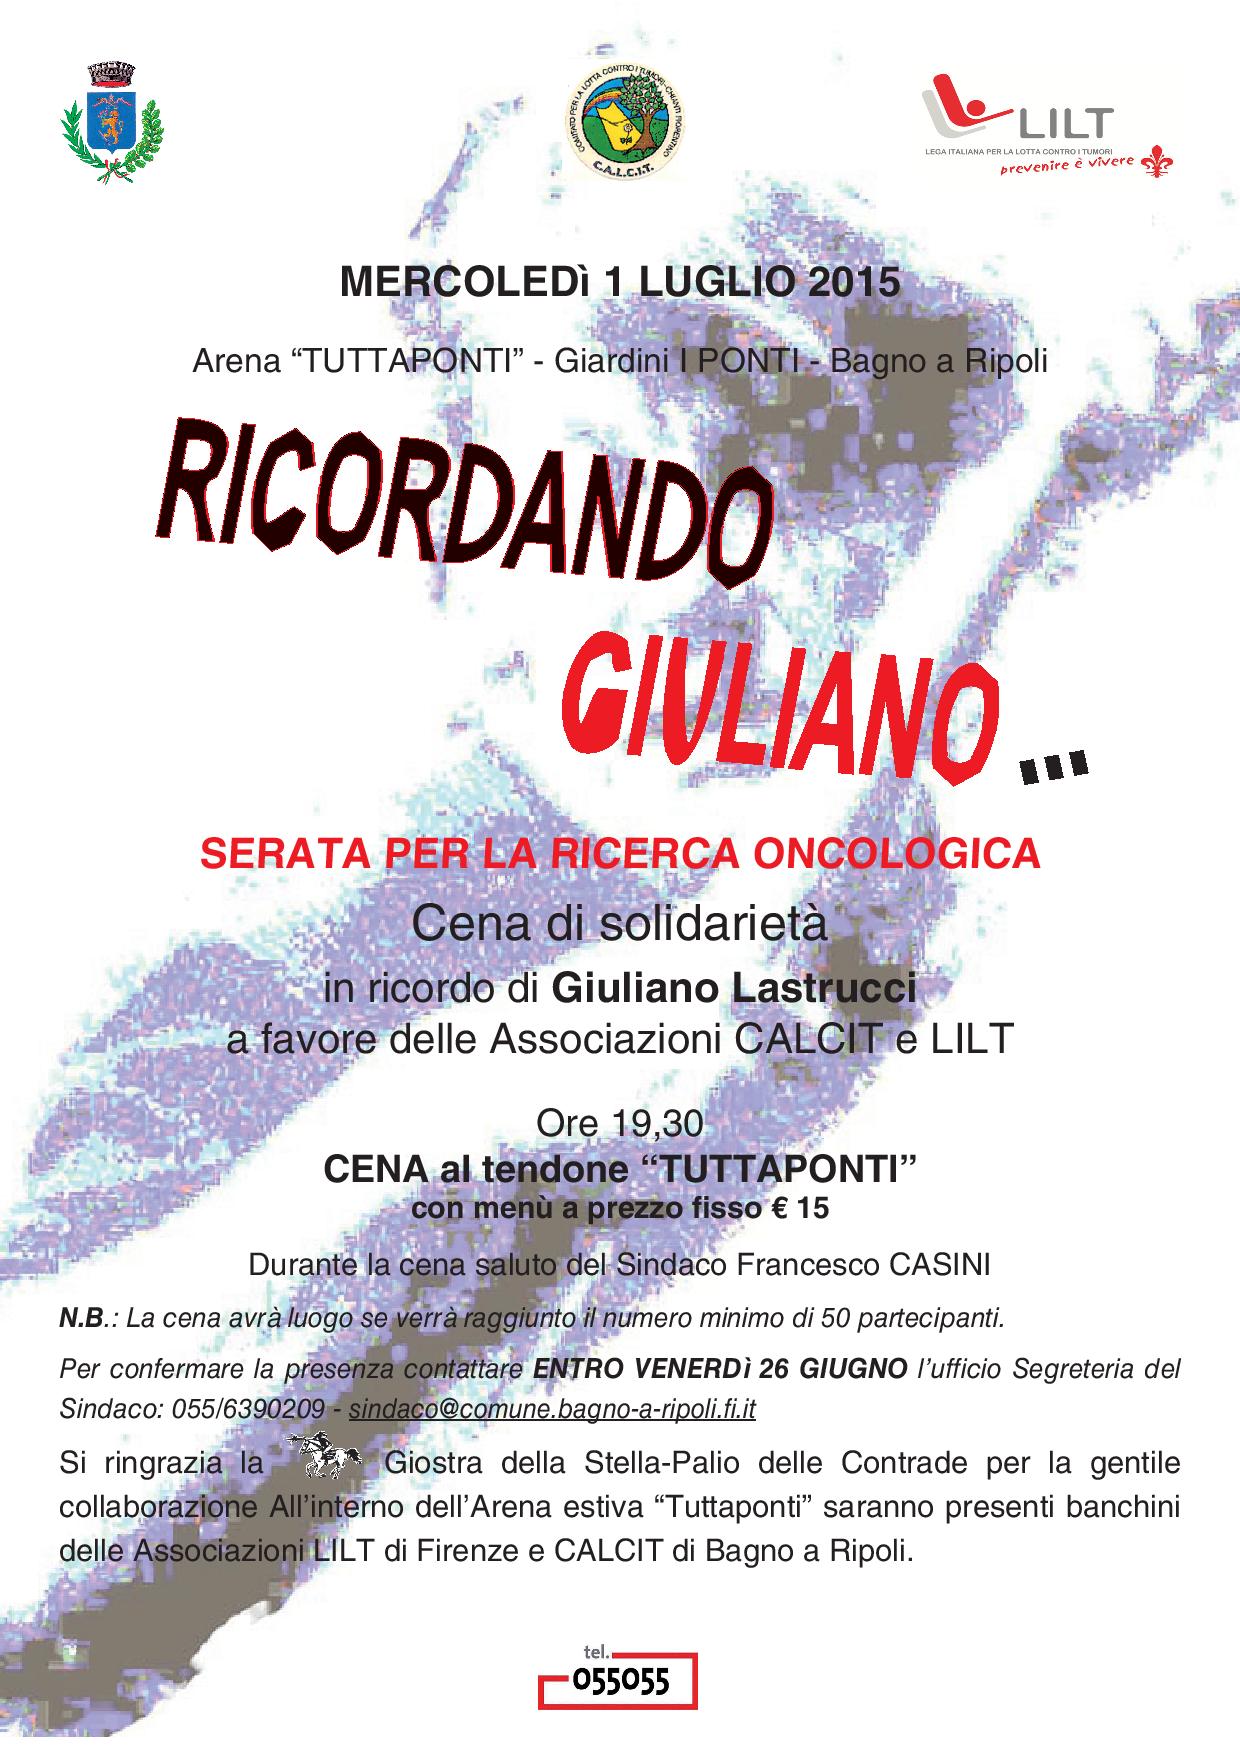 Ricordando Giuliano... 1° luglio 2015